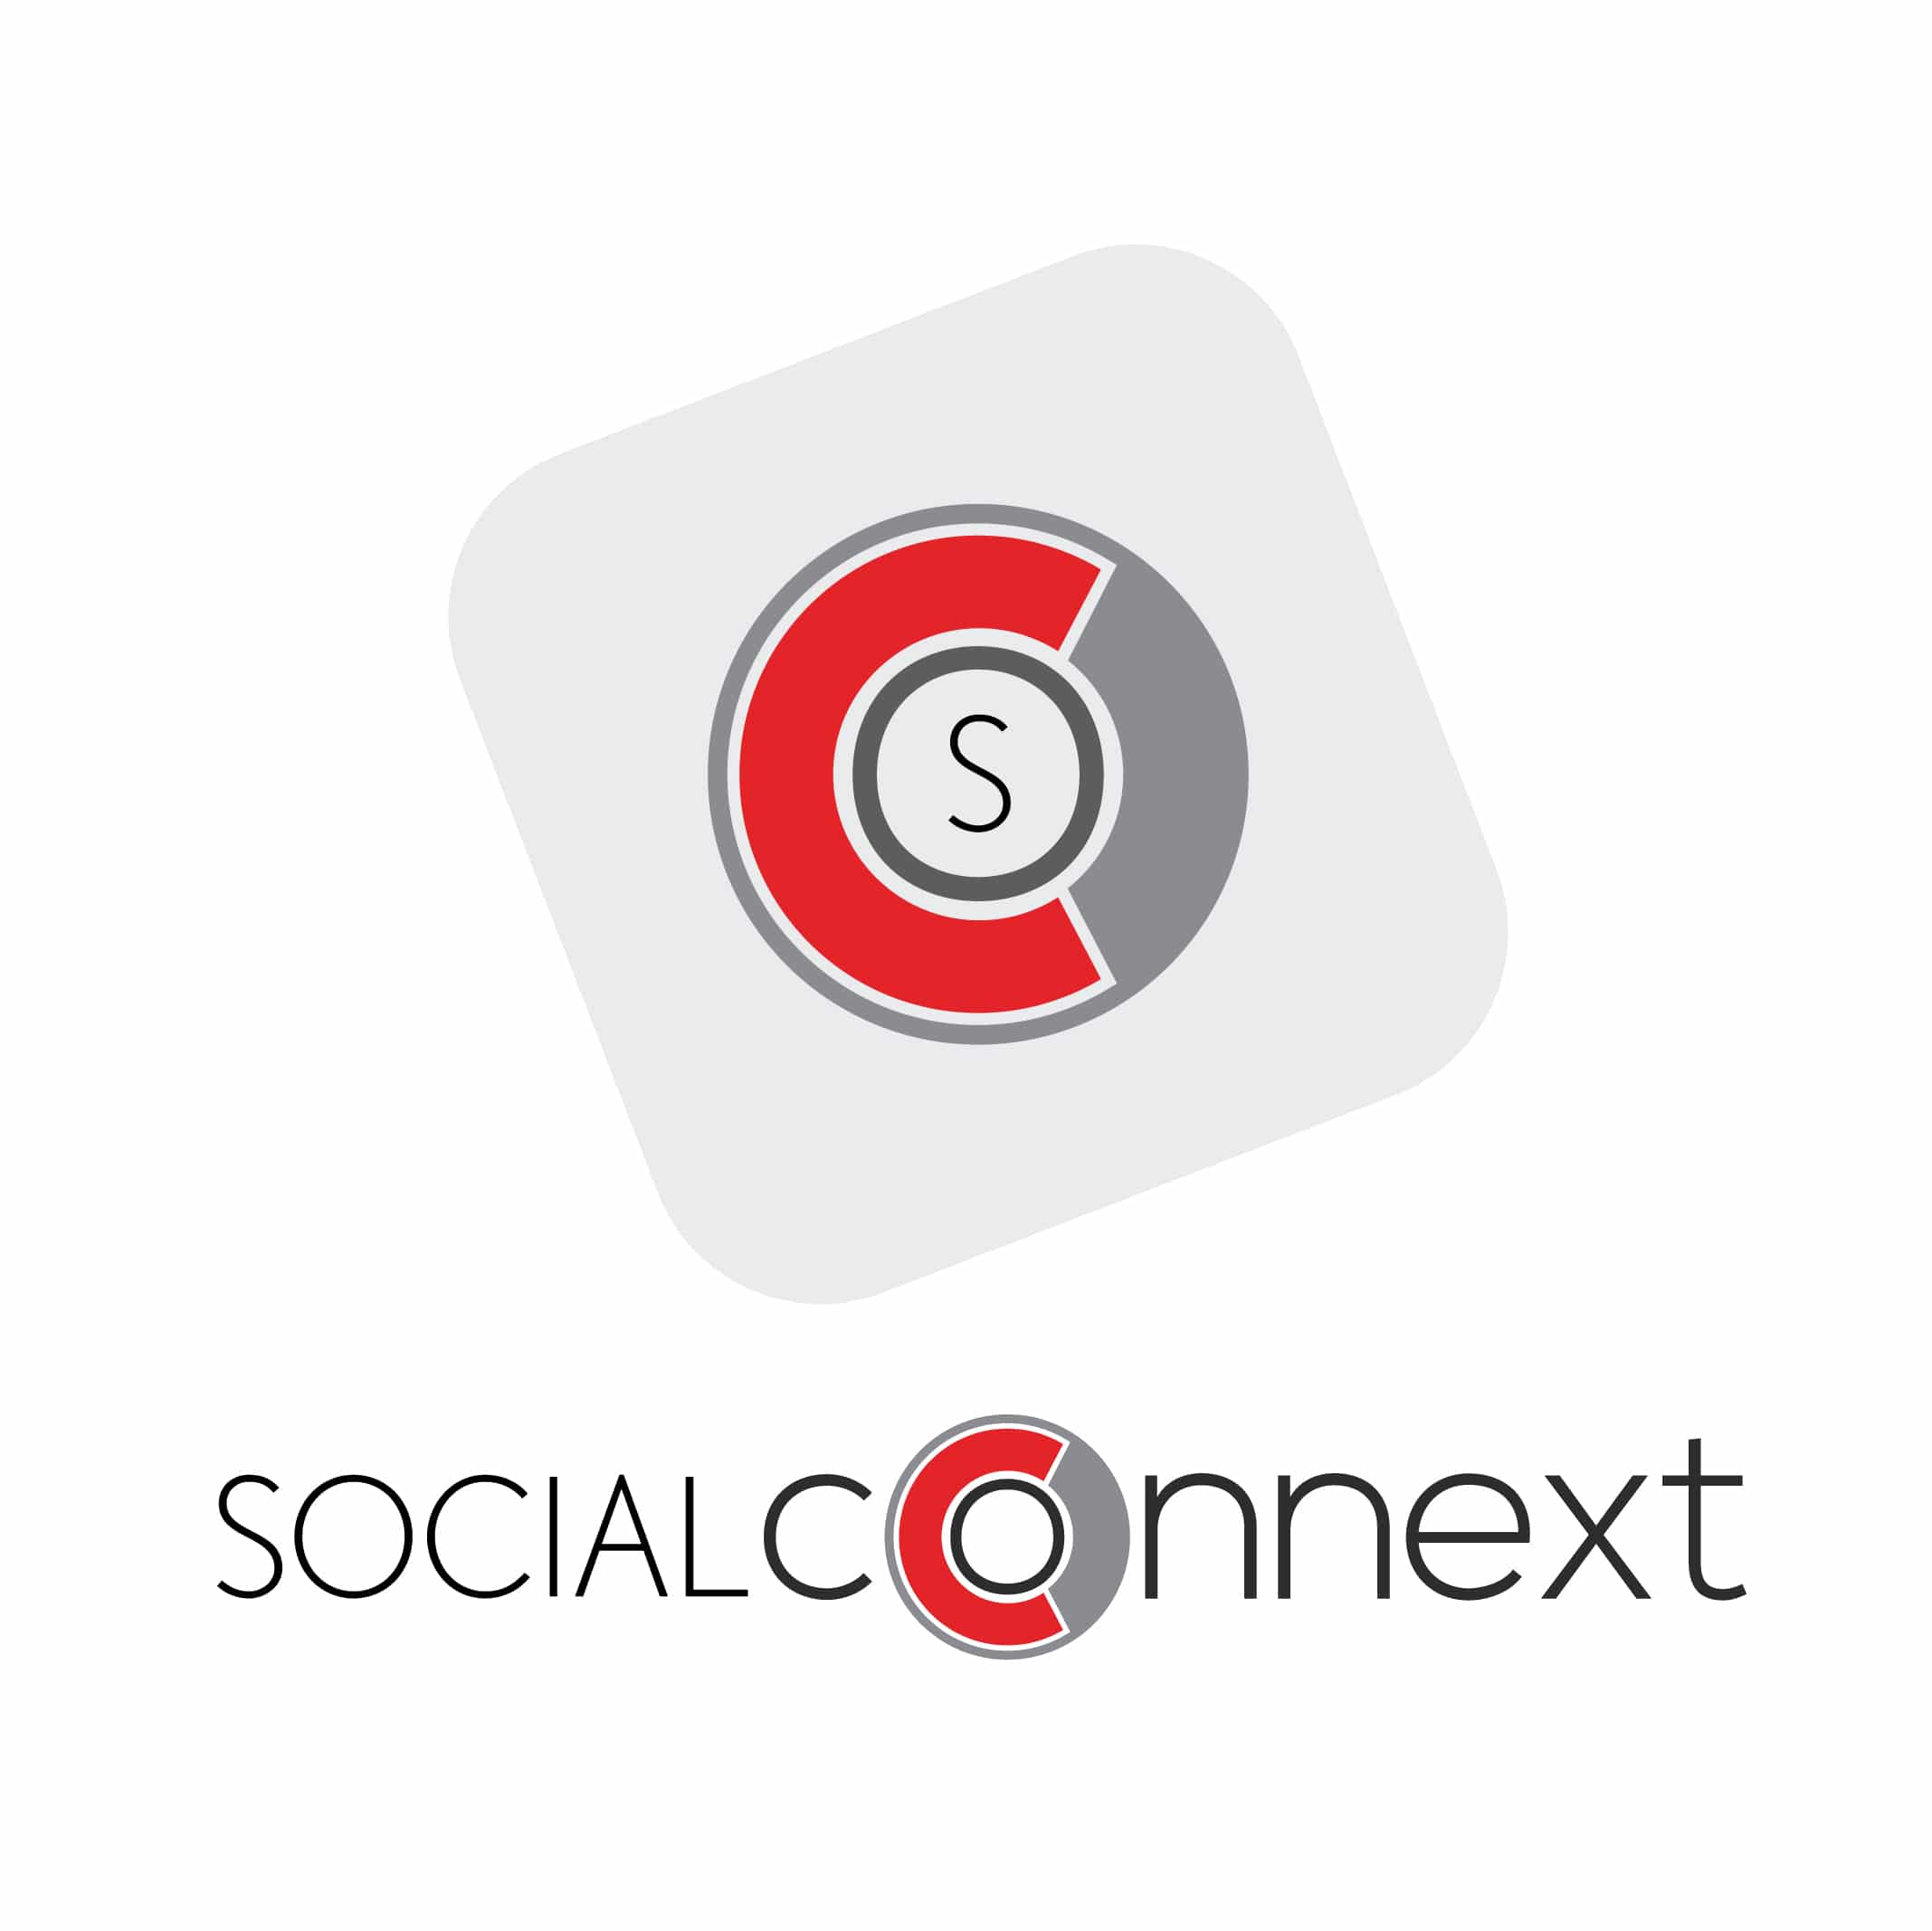 SocialConnext